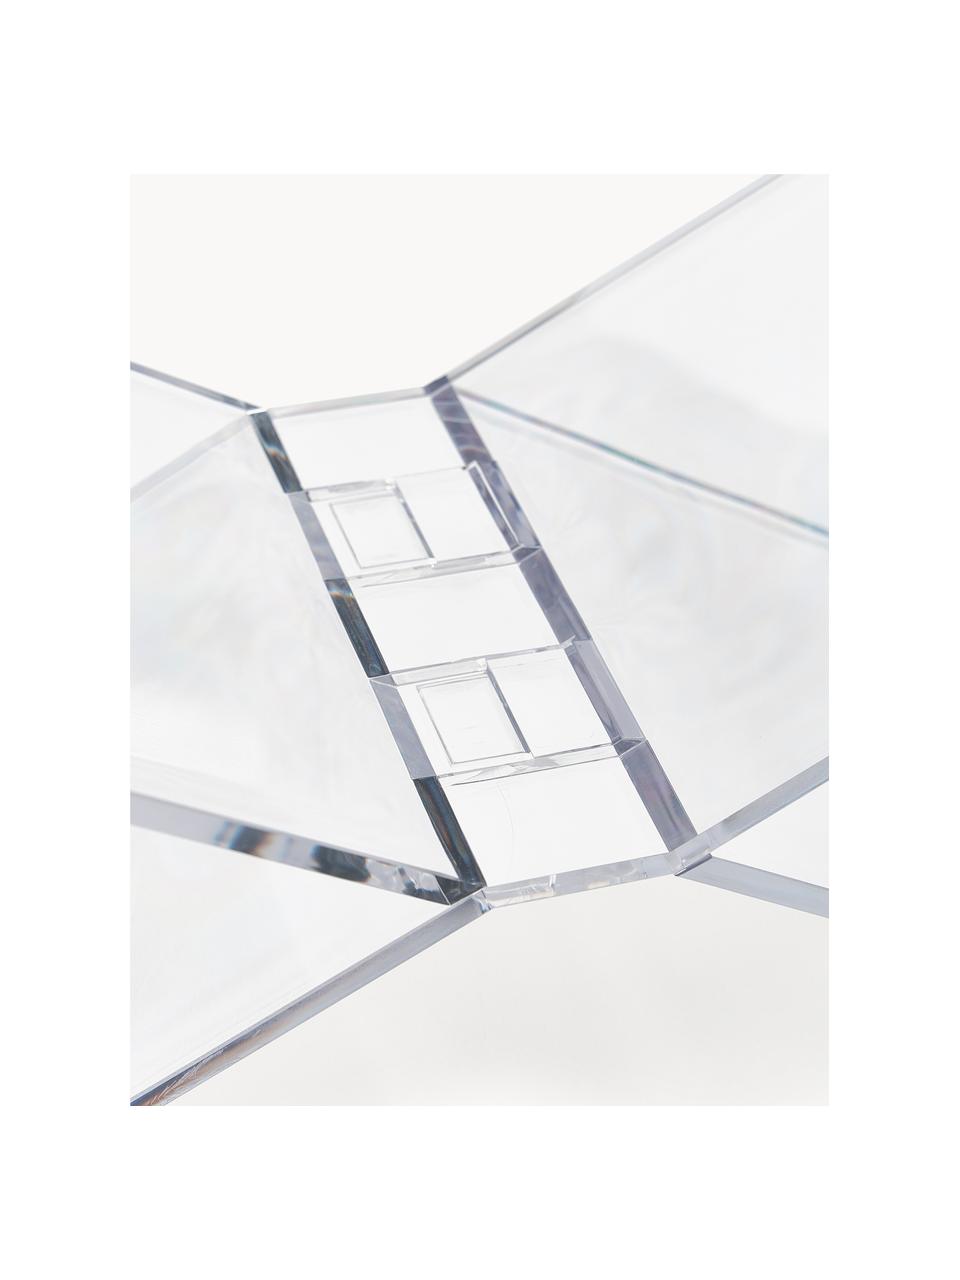 Stojak na książki Crystal, Szkło akrylowe, Transparentny, S 35 x W 15 cm